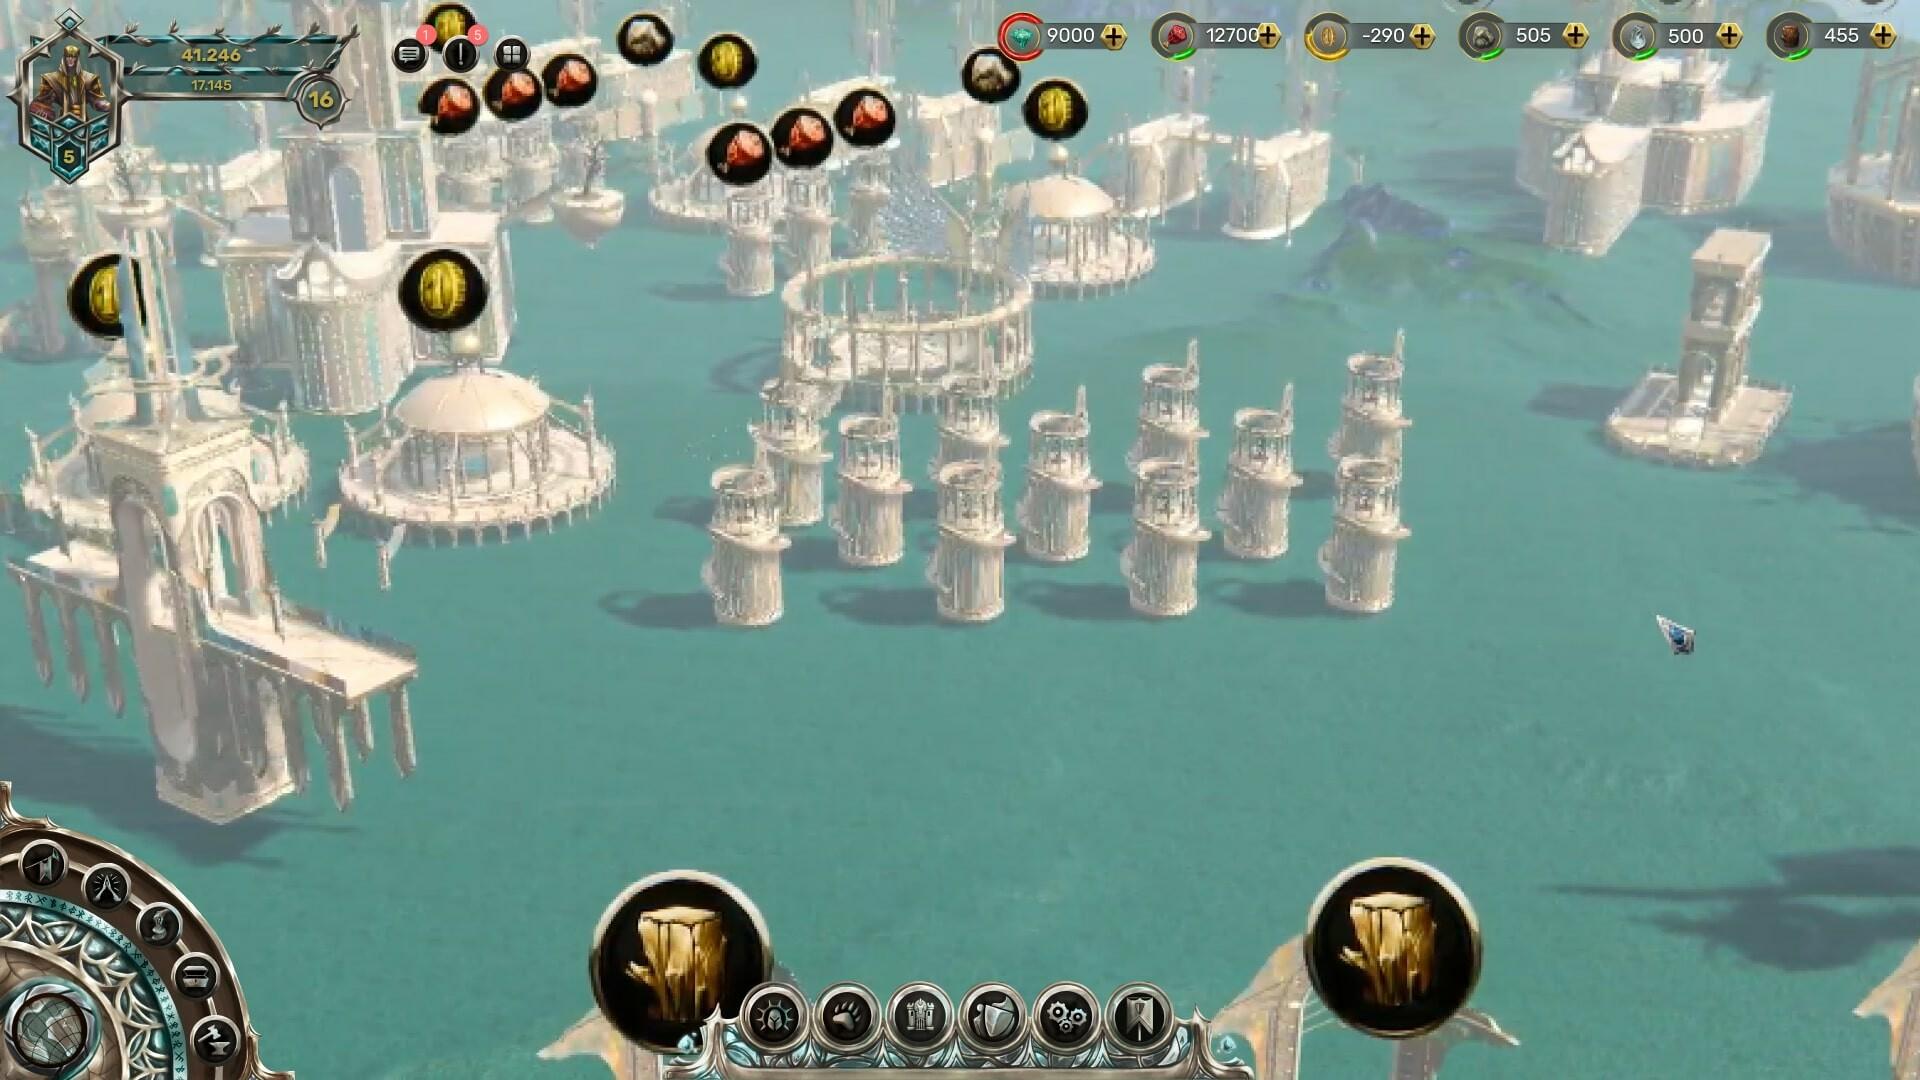 Screenshot of Holy War